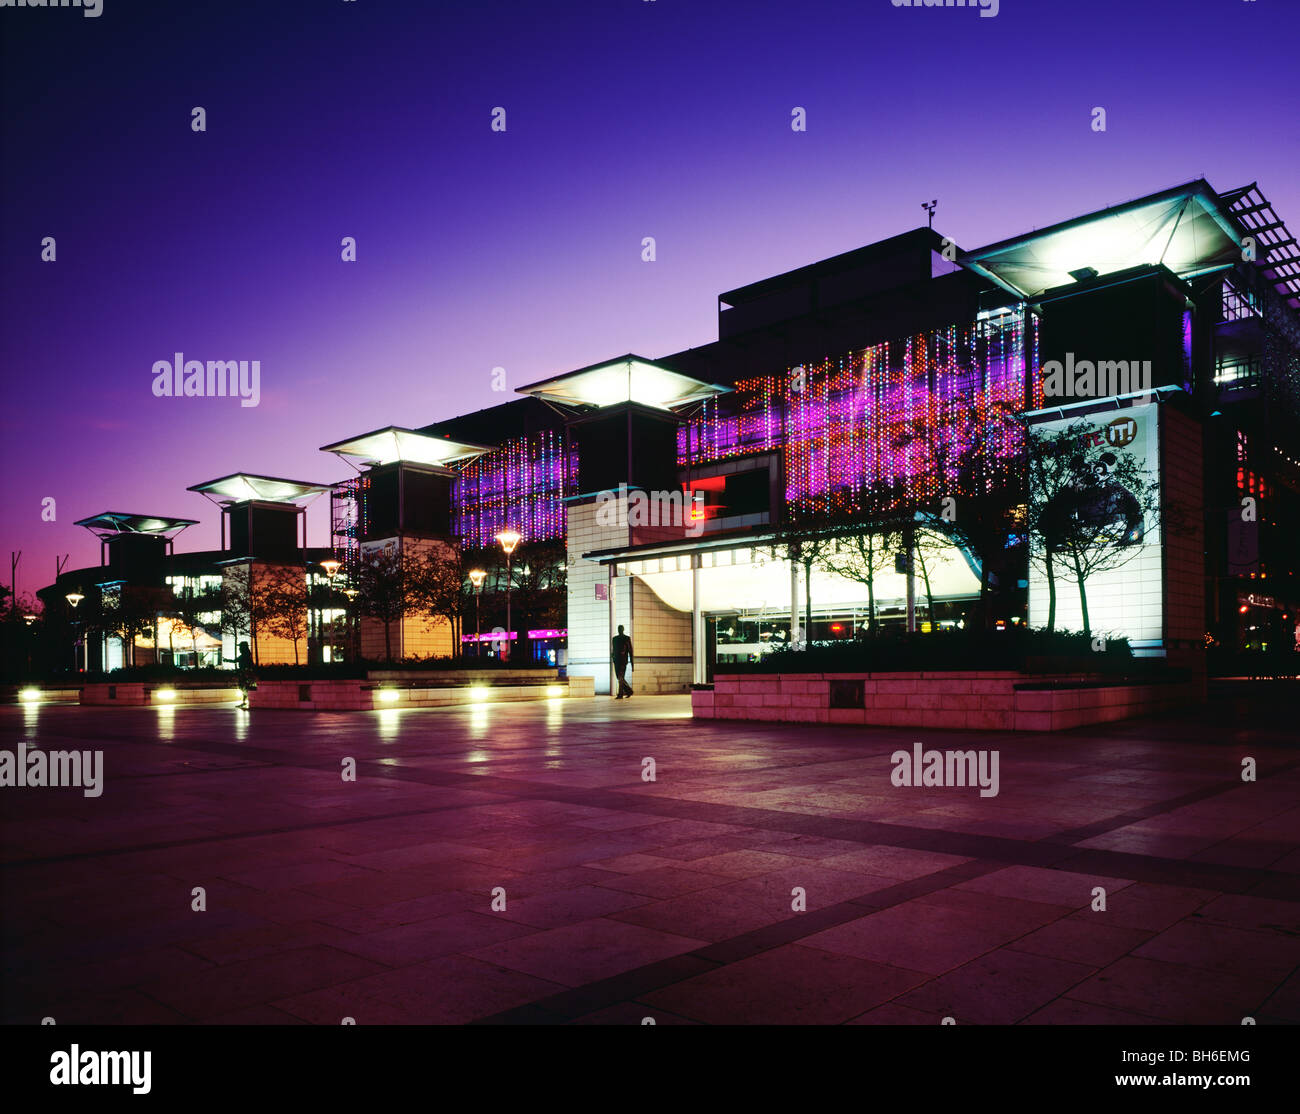 Abenddämmerung am Millennium Square am Harbourside in der Stadt Bristol, England. Stockfoto